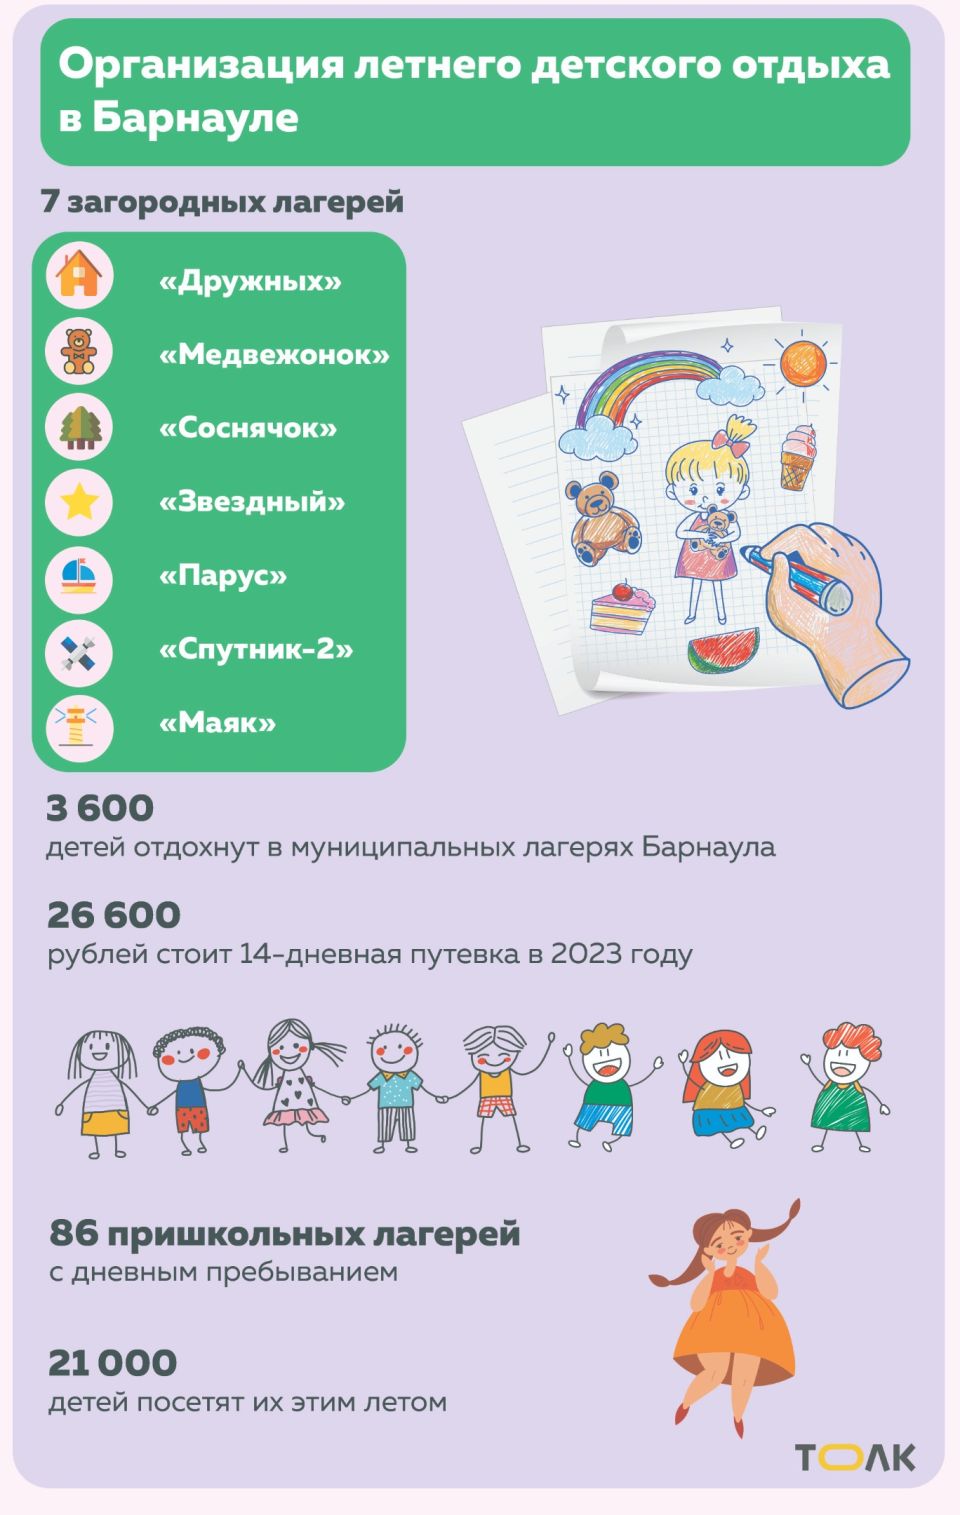 Организация детского летнего отдыха в Барнауле в 2023 году